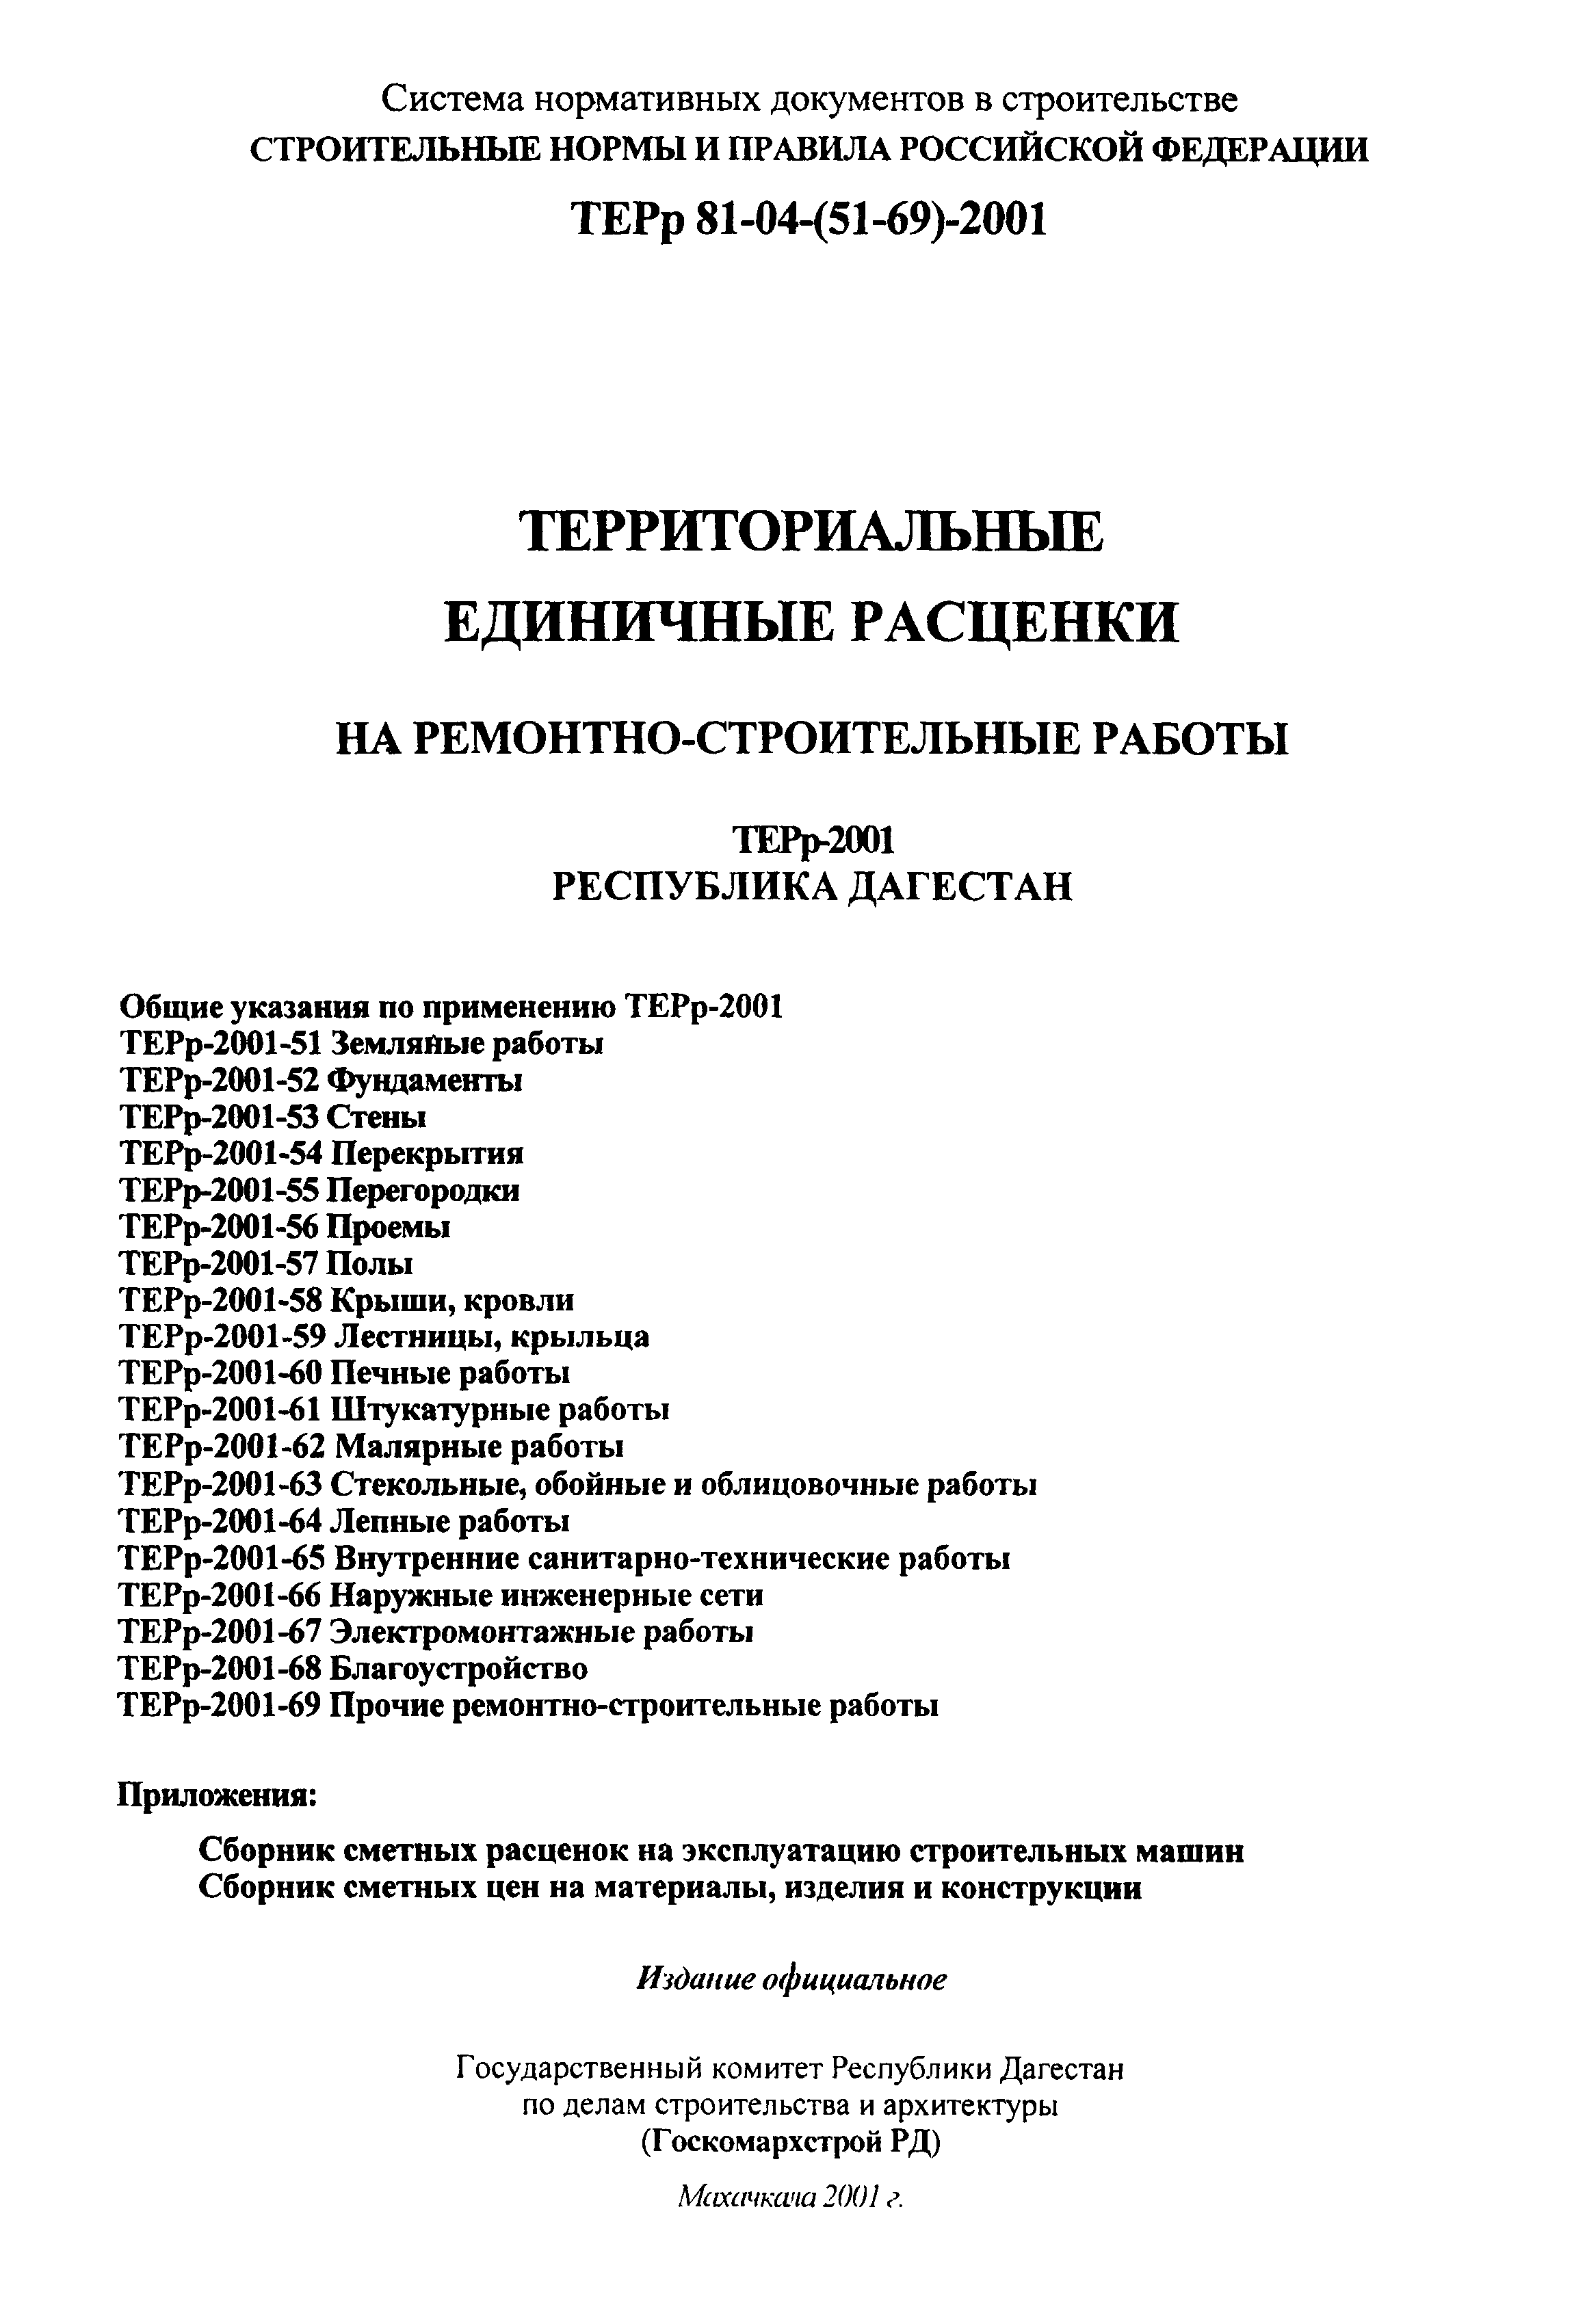 ТЕРр Республика Дагестан 2001-52